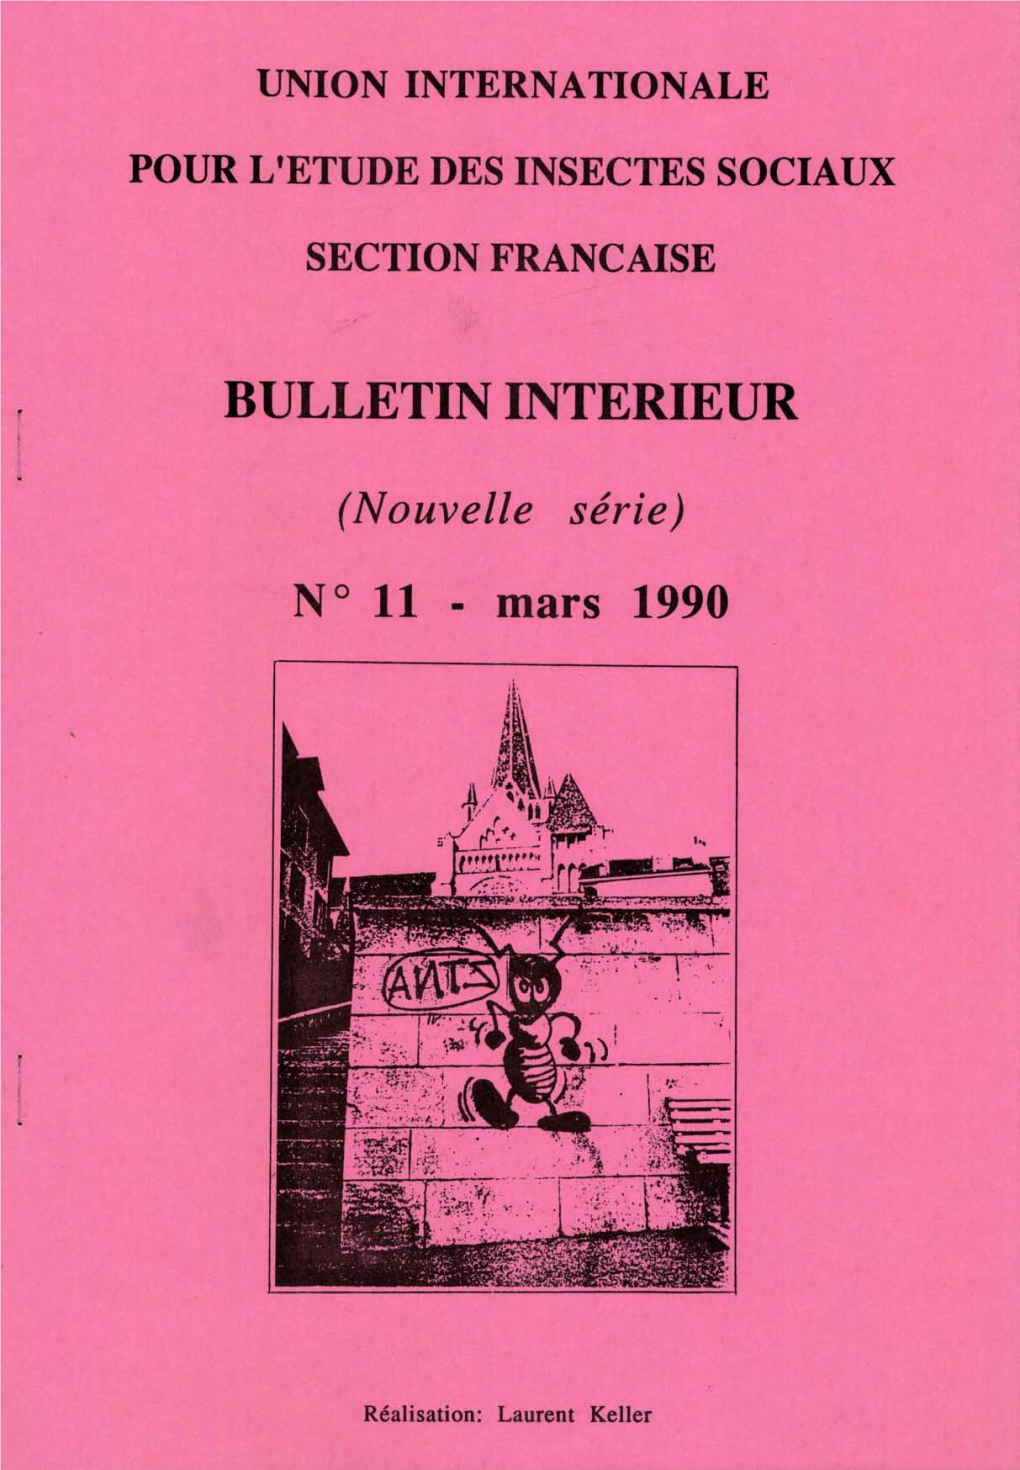 Bulletin Interieur